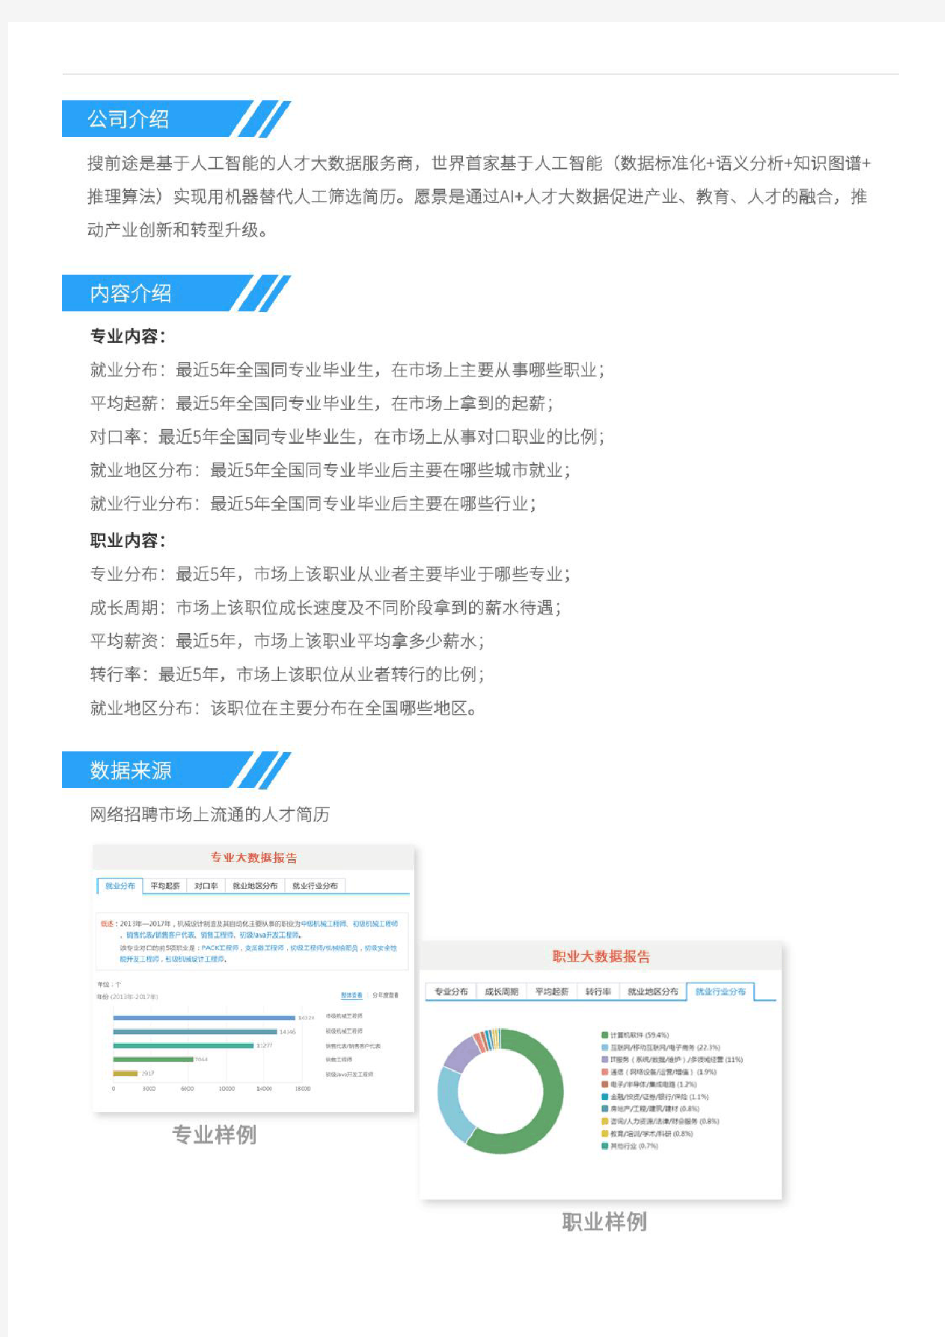 2013-2017南京理工大学社会工作专业毕业生就业大数据报告